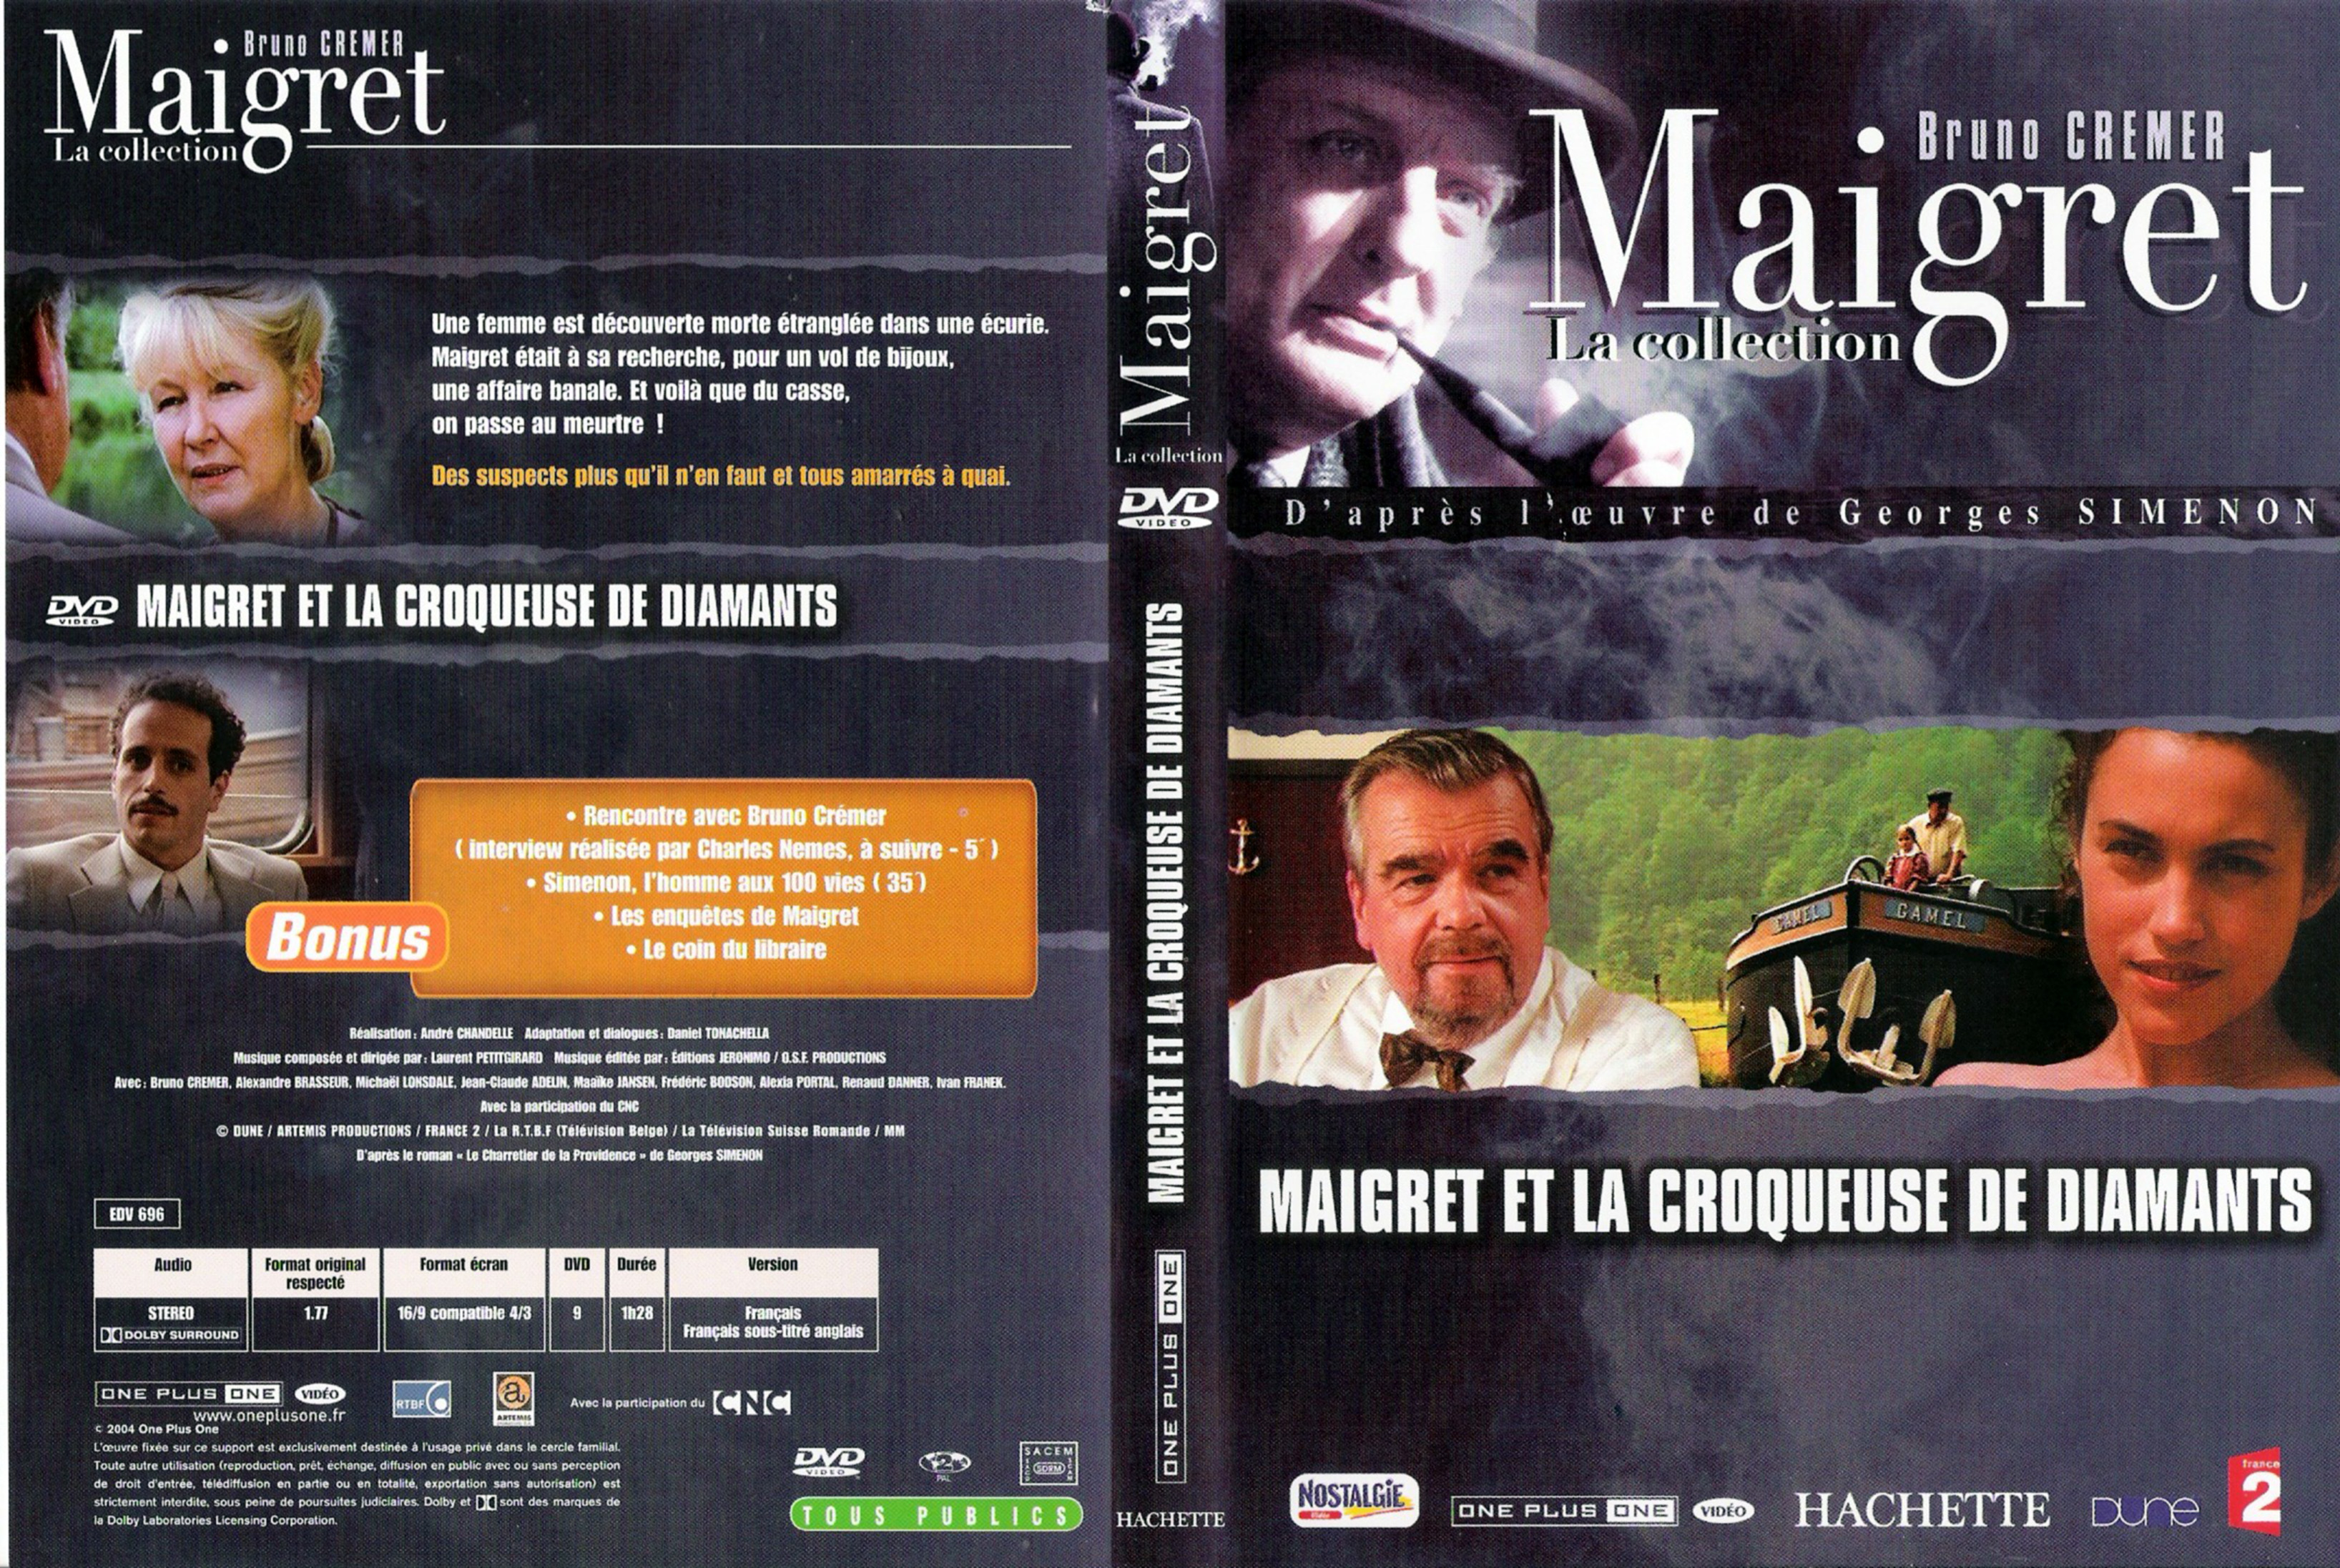 Jaquette DVD Maigret et la croqueuse de diamants (Bruno Cremer)